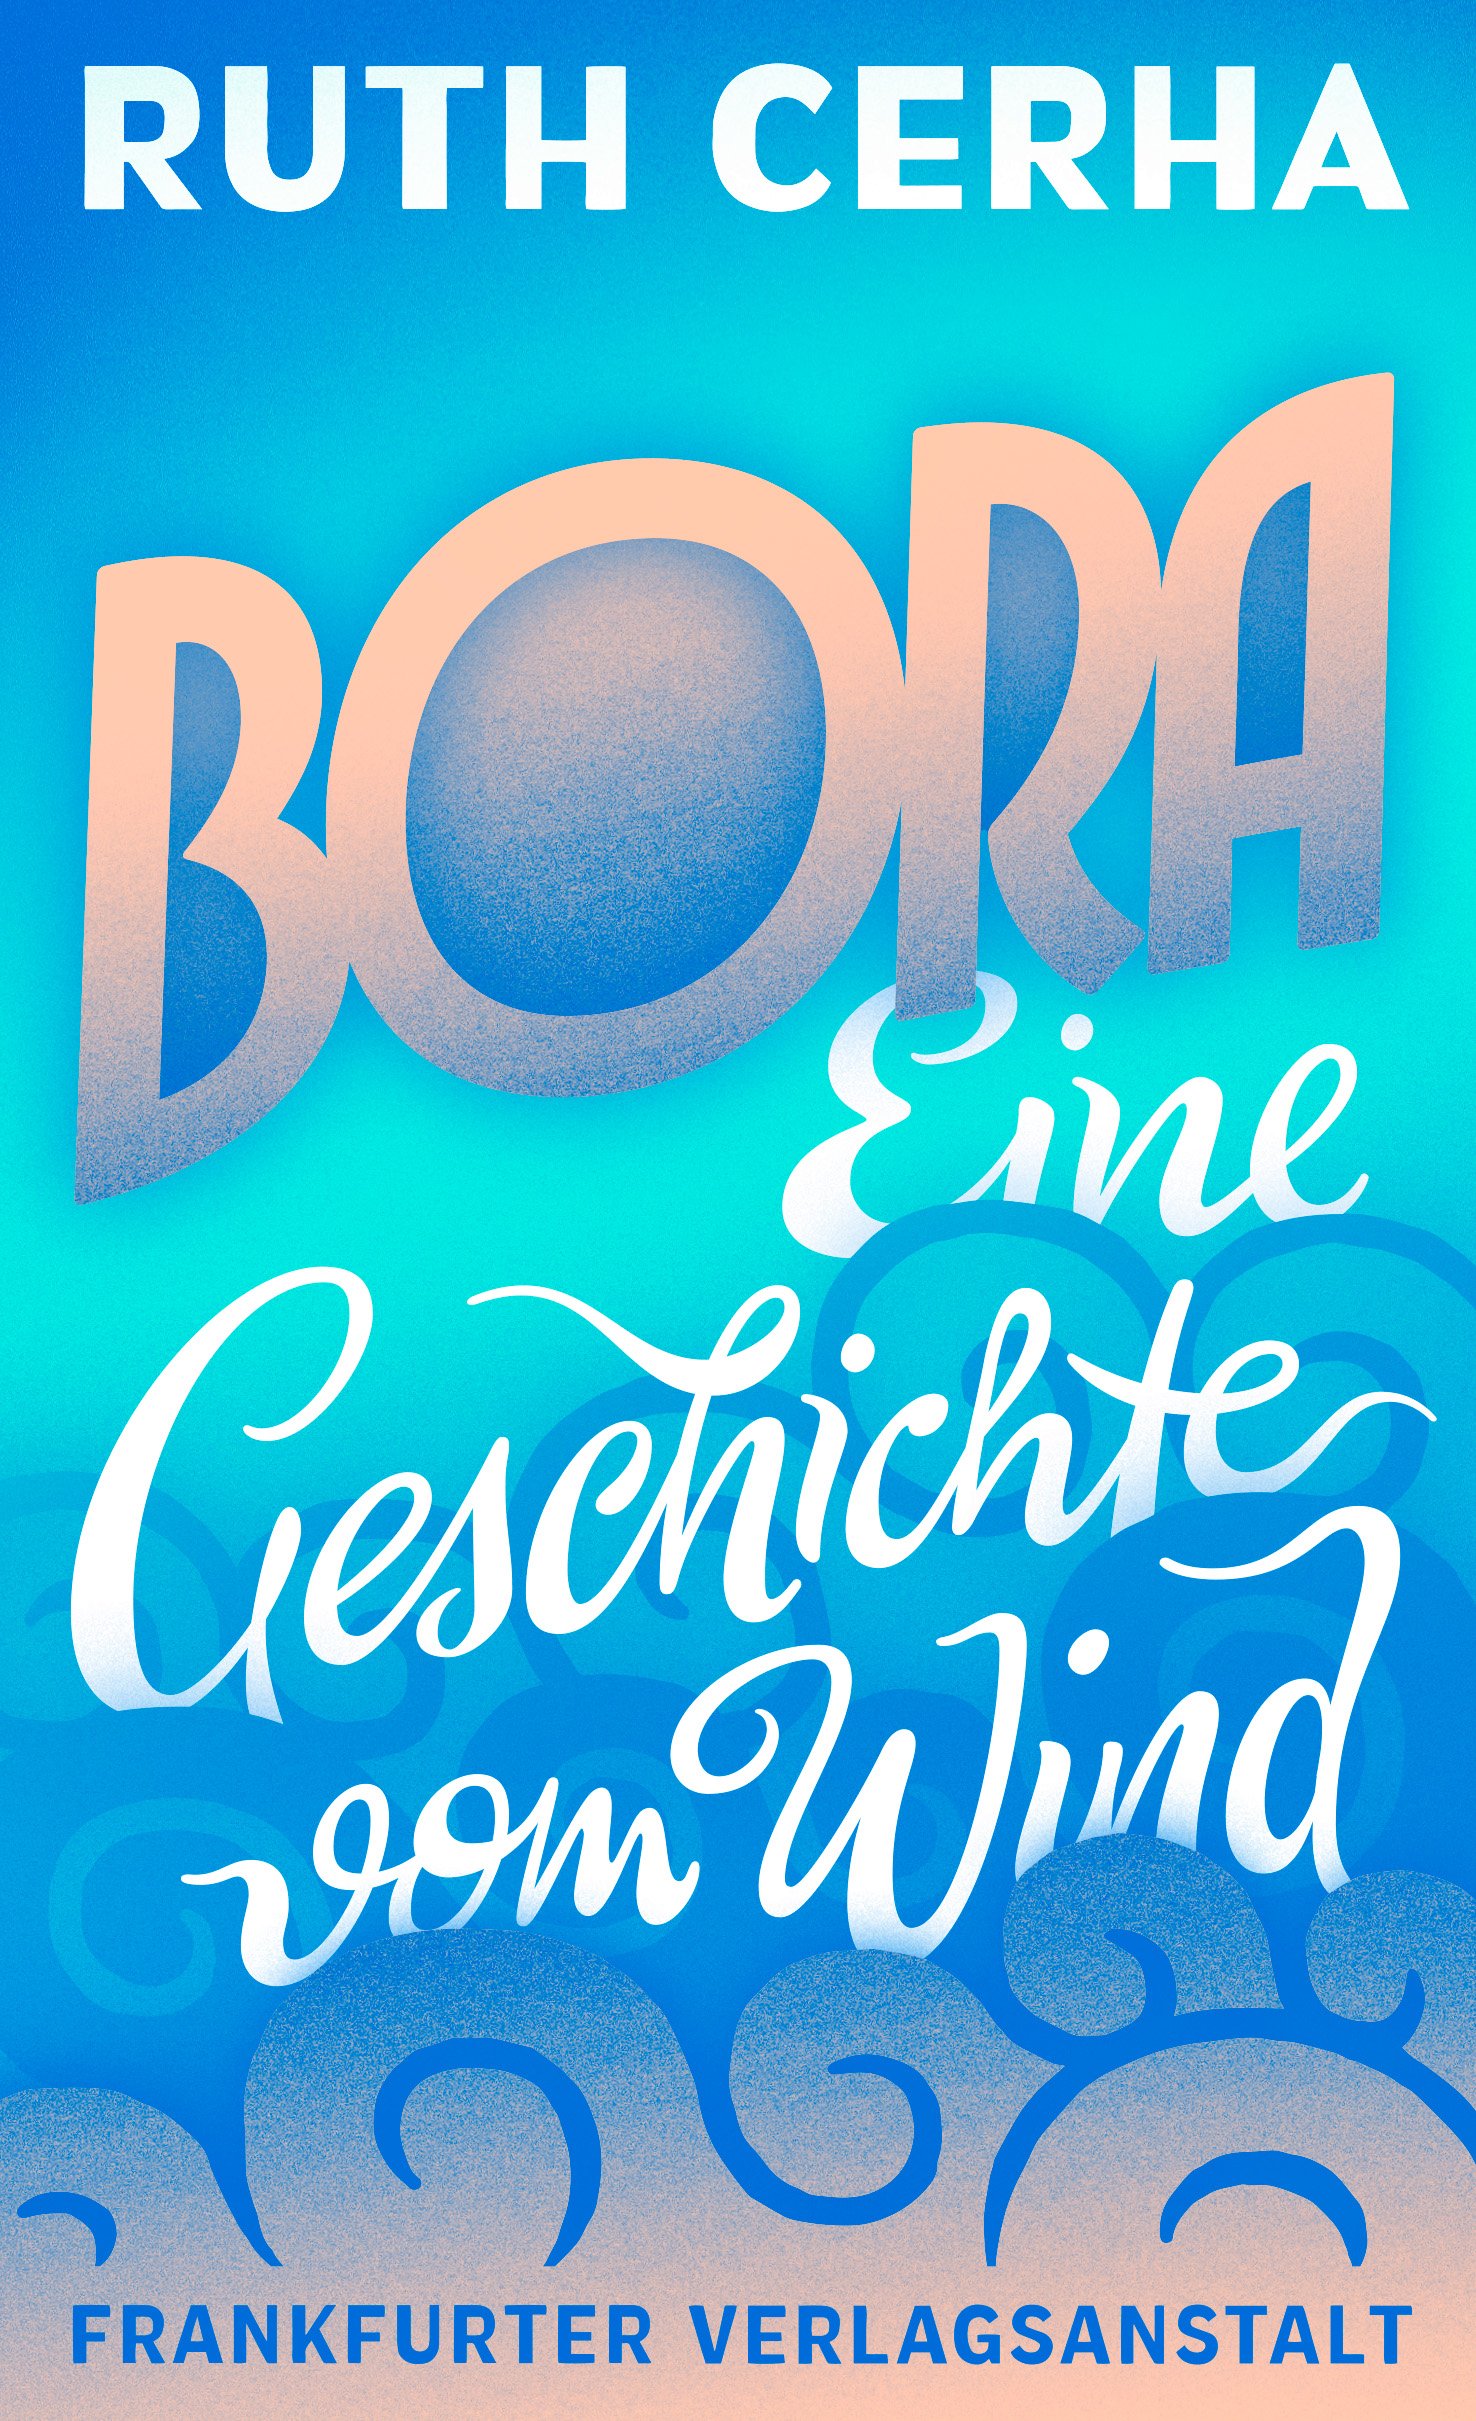 Ruth Cerha Bora Eine Geschichte vom Wind